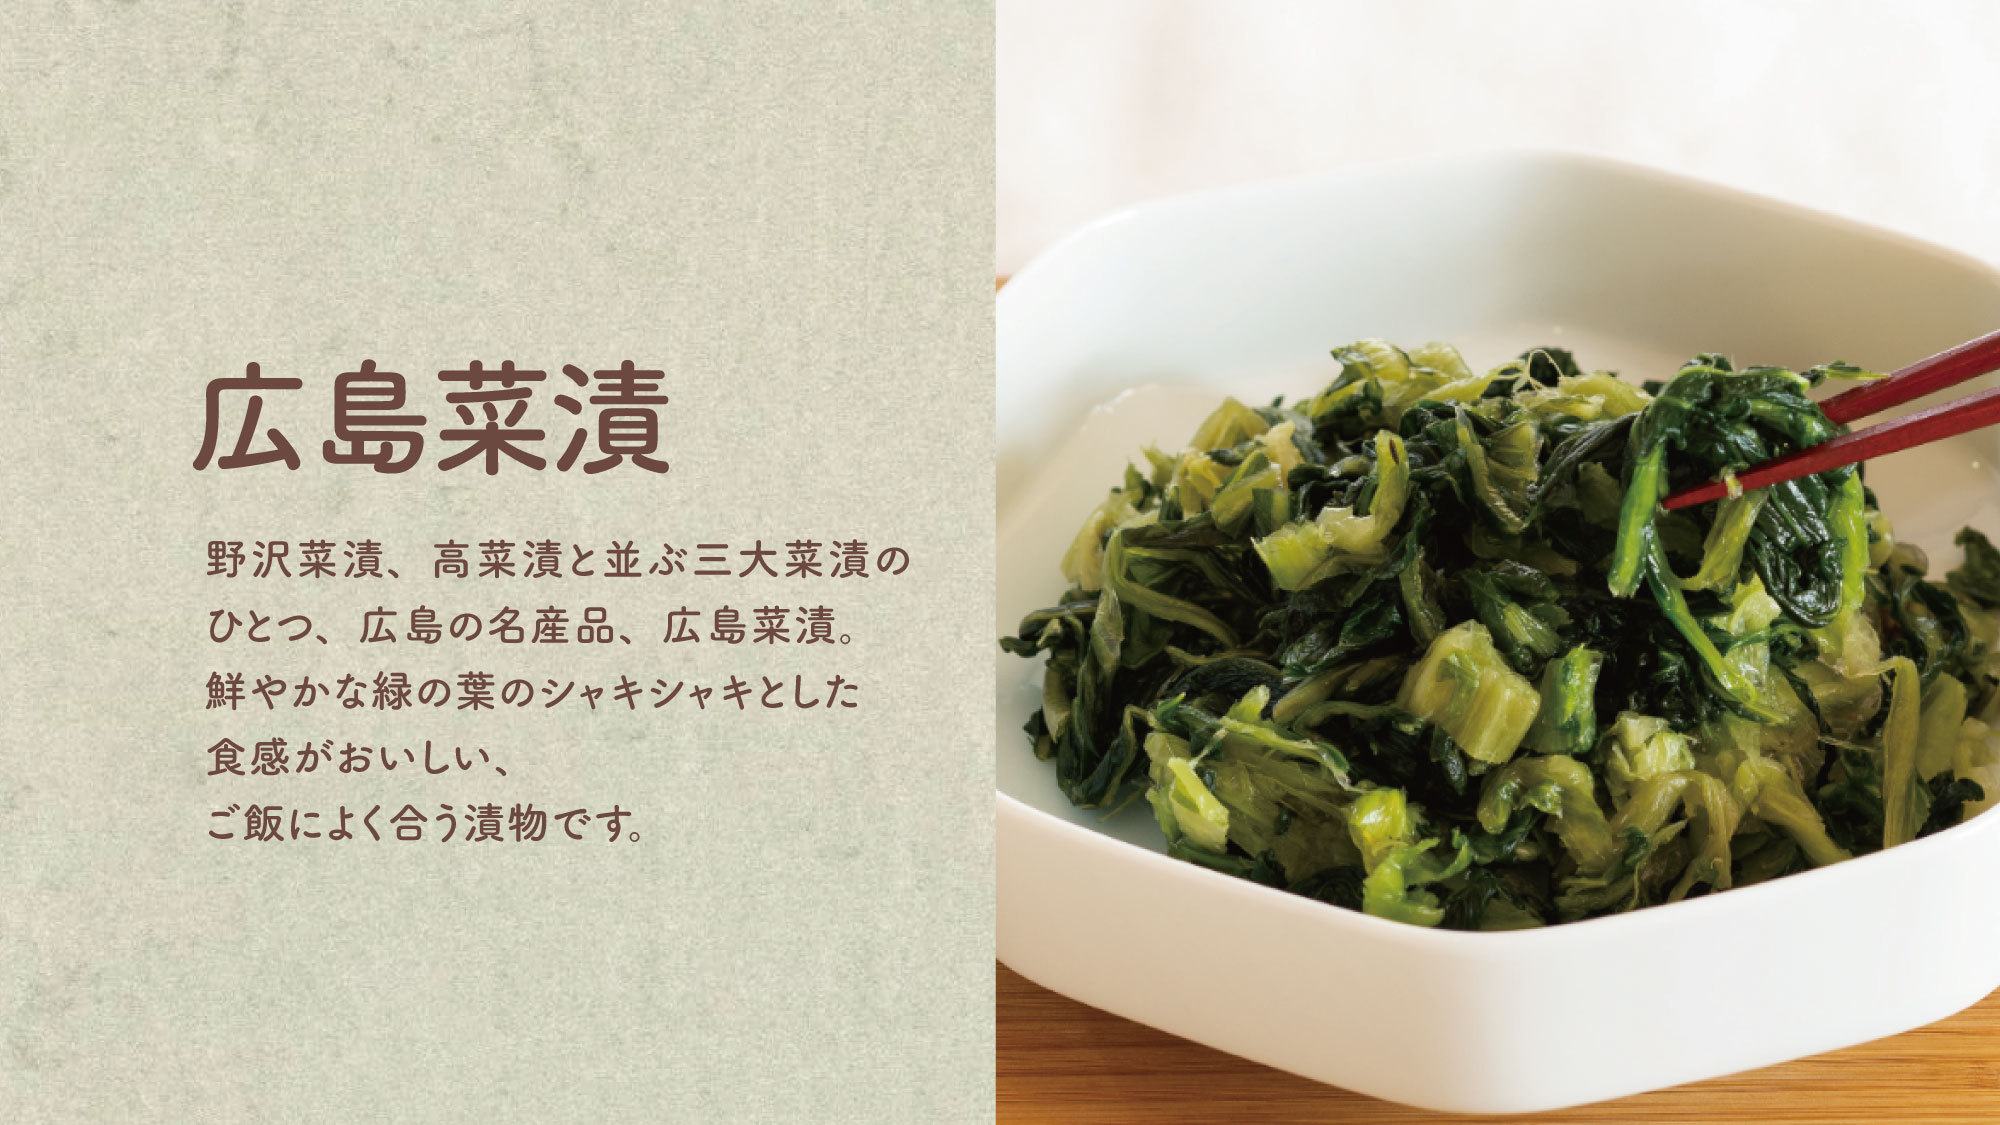 【広島菜漬】三大菜漬のひとつで、広島の名産品です。シャキシャキとした食感がおいしくご飯によく合います